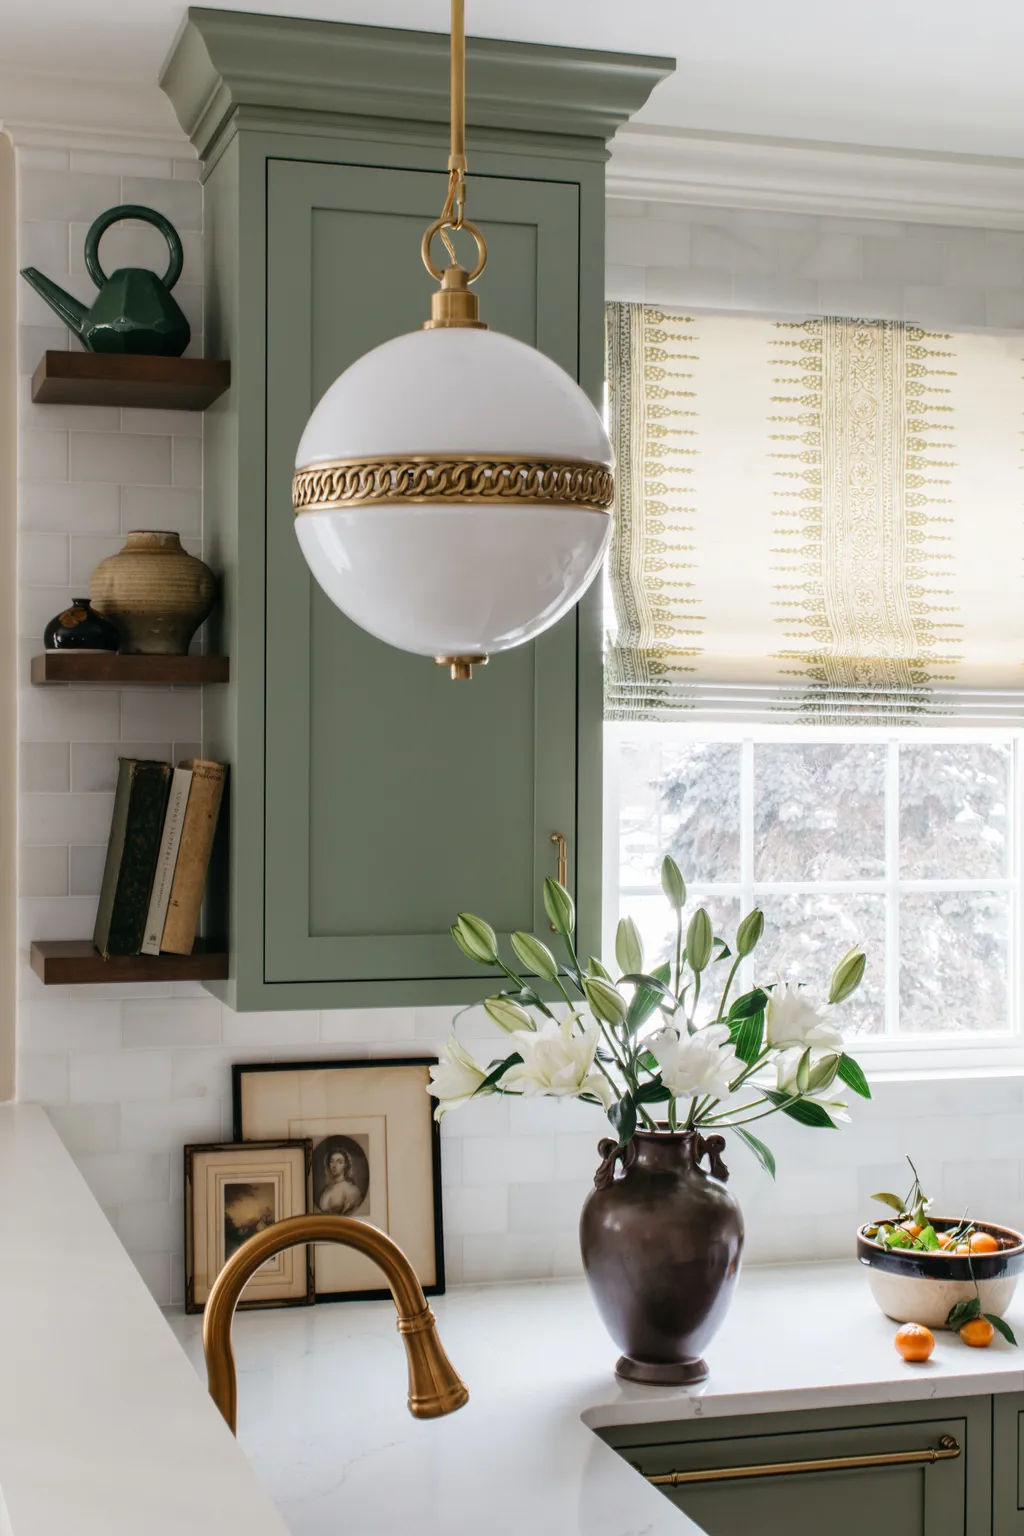  MÀU TRẮNG NHẠT VÀ MÀU XANH LÁ CÂY XÔ THƠM nhà bếp với những bức tường và gạch màu trắng nhạt và tủ màu xanh lá cây xô thơm  (Nguồn hình ảnh: Margaret Rajic. Thiết kế: TKS Design Group) Sự phổ biến của những căn bếp màu xanh lá cây xô thơm vẫn đang ngày càng phát triển mạnh mẽ, khiến các nhà thiết kế phải quay đi quay lại với nó vì đặc tính thư giãn của nó trong bất kỳ không gian sống nào, kể cả nhà bếp. Nhà thiết kế và kiến ​​trúc sư nội thất Martha Franco giải thích: “Sự kết hợp màu sắc để tạo ra bầu không khí yên tĩnh trong nhà bếp là màu xanh lá cây xô thơm và màu trắng nhạt” . 'Đạt được vẻ ngoài vượt thời gian bằng cách kết hợp tủ màu xanh lá cây xô thơm với những bức tường trắng nhạt, được bổ sung bởi nội thất tủ bằng gỗ tự nhiên phía sau cửa kính và tay nắm màu đen. Bảng màu cổ điển này cực kỳ hấp dẫn về mặt thị giác. Để có một nhà bếp gắn kết và yên tĩnh, màu nhấn có thể chỉ có trên đảo bếp, đồng thời giữ cho tủ và tường nhất quán. Những sự kết hợp này tạo nên một bầu không khí thanh bình và yên tĩnh, hoàn hảo cho cả việc nấu ăn và tụ tập cùng những người thân yêu', cô nói với tôi.  Nhà thiết kế nội thất  Alexander Adducci  cũng thích sử dụng màu xanh lá cây xô thơm và ông kết hợp nó với các điểm nhấn bằng gỗ và kim loại ấm áp để tạo nên vẻ ngoài tinh tế. 'Để có bầu không khí nhà bếp thanh bình, hãy chọn những màu sắc gợi lên sự yên bình – hãy nghĩ đến màu xanh xô thơm, màu xám nhẹ nhàng và sự ấm áp dễ chịu của gỗ tự nhiên. Việc kết hợp các lớp hoàn thiện nhẹ hơn có thể giúp đạt được cảm giác giống như spa. Và đừng bỏ qua các điểm nhấn bằng đồng và kim loại súng; chúng tạo thêm chiều sâu trong khi vẫn duy trì bầu không khí êm dịu trong không gian', ông gợi ý.